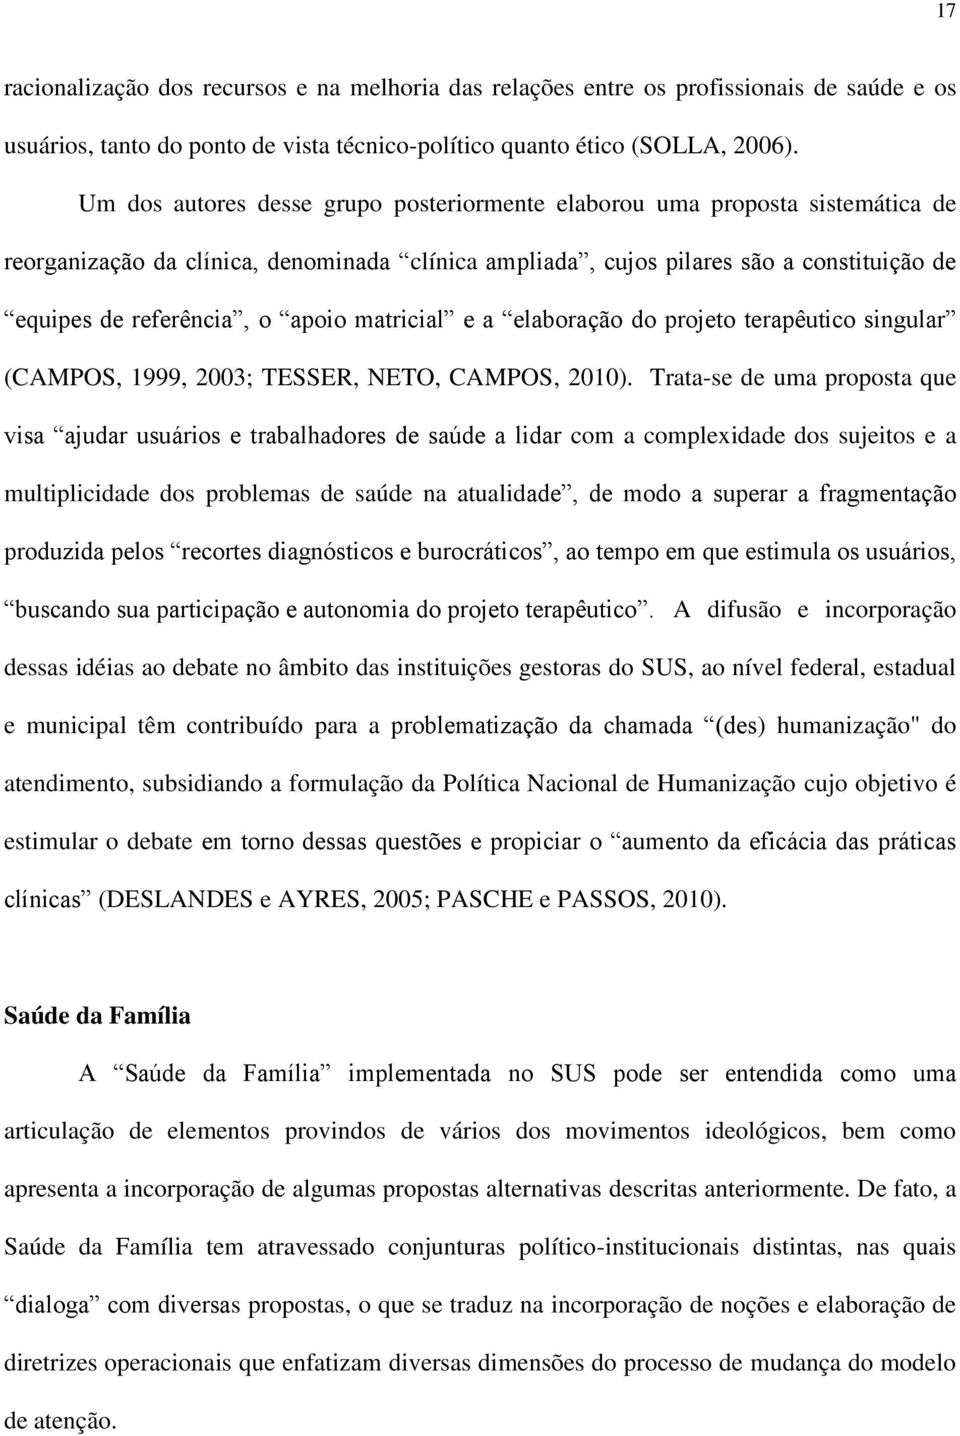 apoio matricial e a elaboração do projeto terapêutico singular (CAMPOS, 1999, 2003; TESSER, NETO, CAMPOS, 2010).